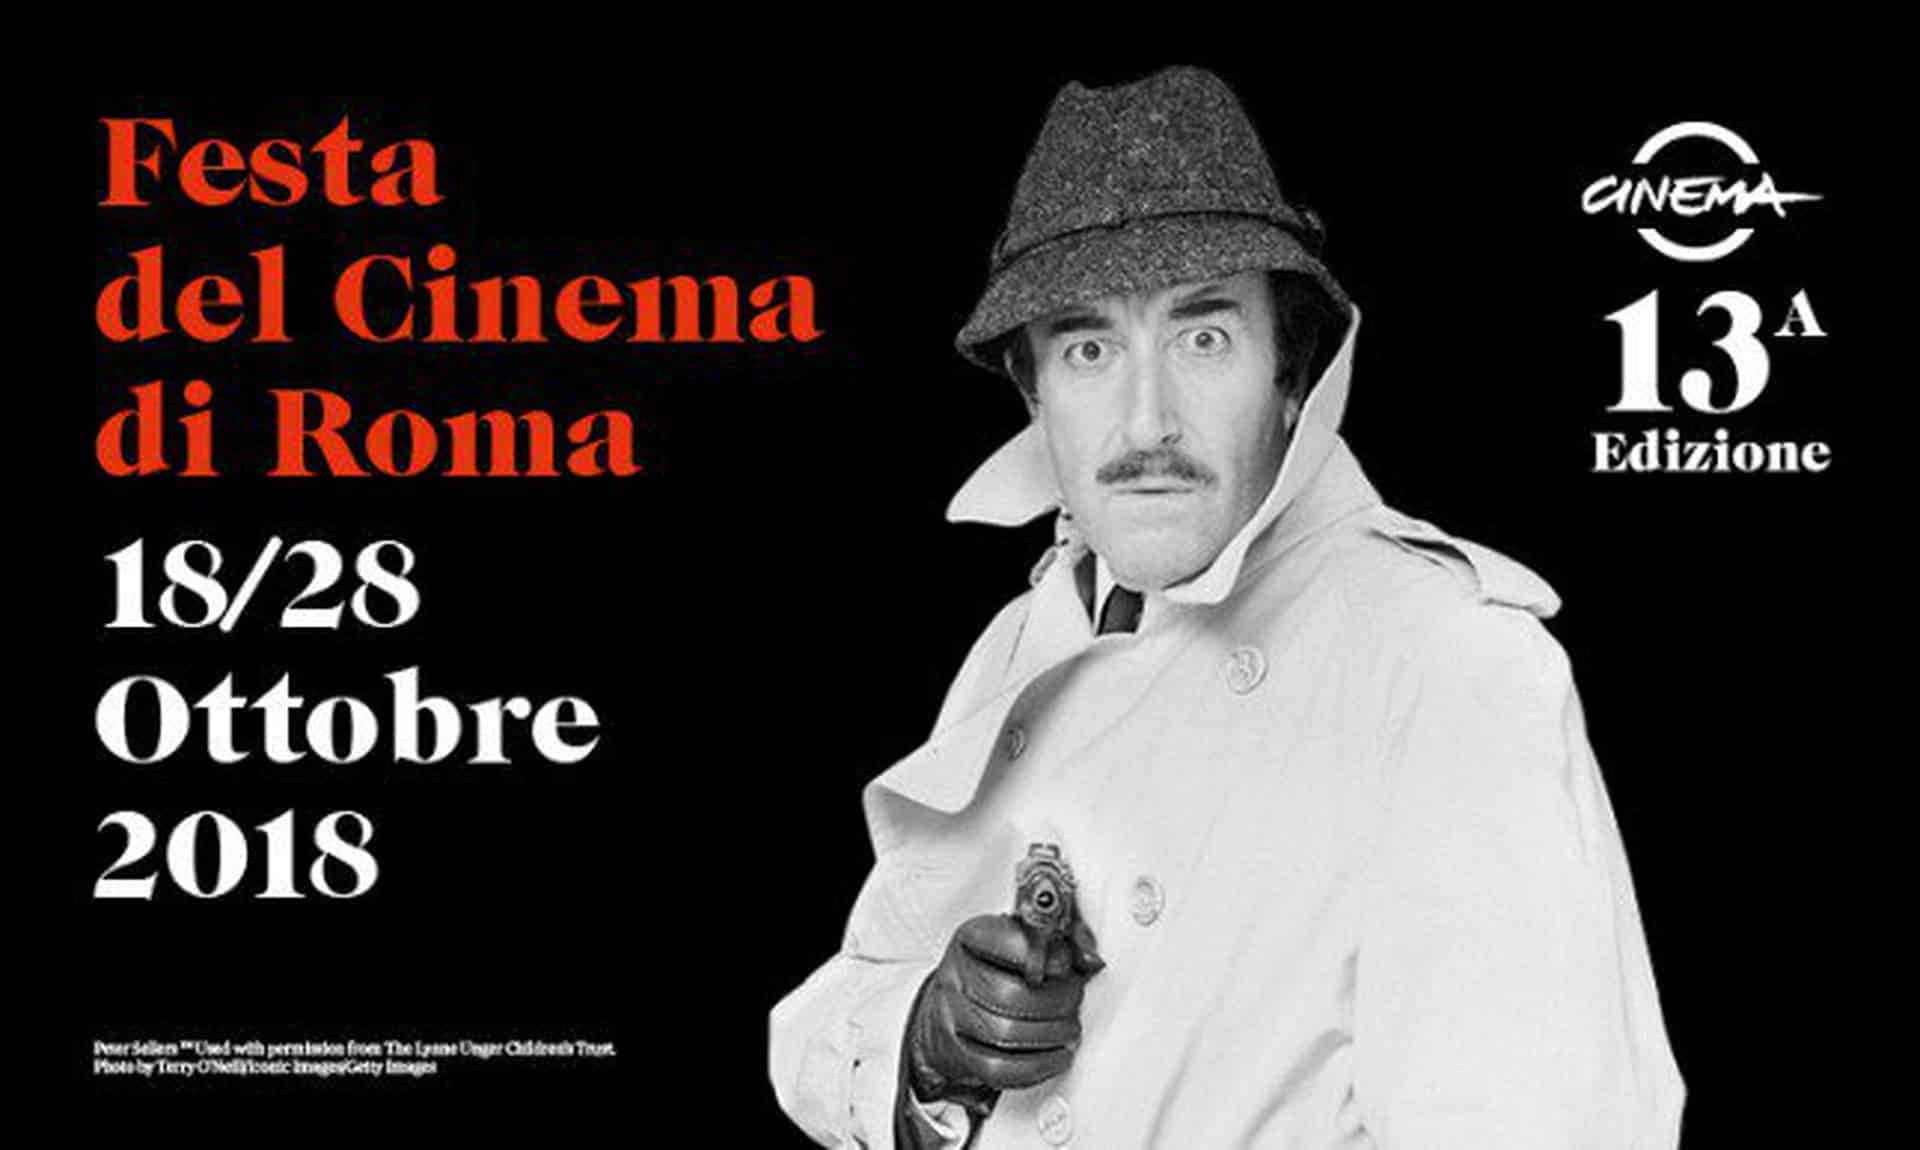 Festa del Cinema di Roma 2018: il programma completo, grandi anteprime internazionali